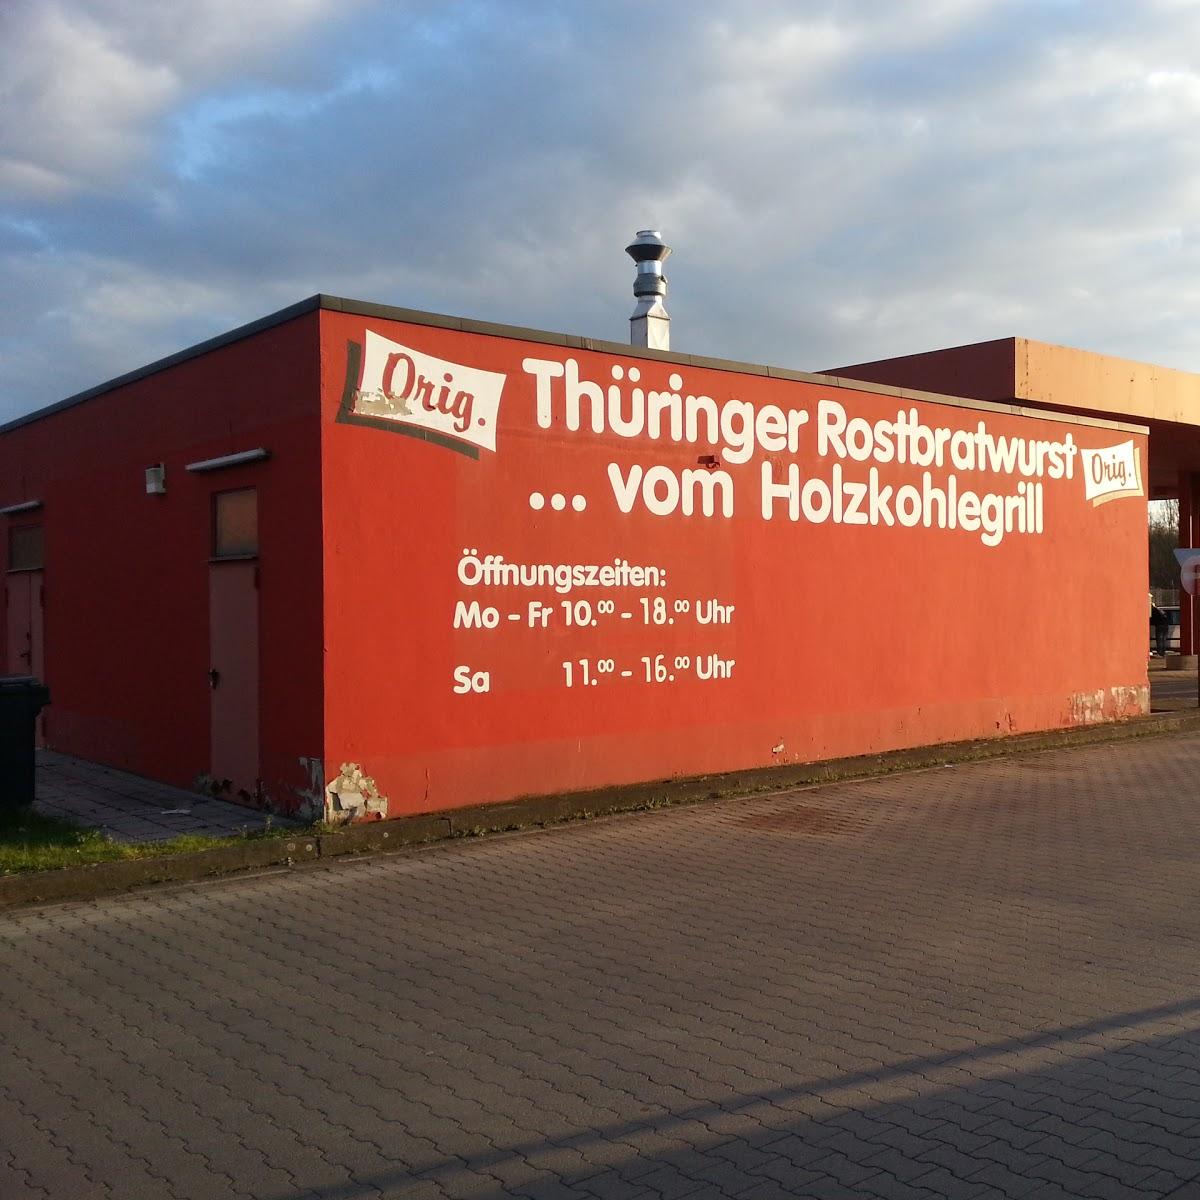 Restaurant "Orig. Thüringer Rostbratwurstgrill" in Falkenberg-Elster